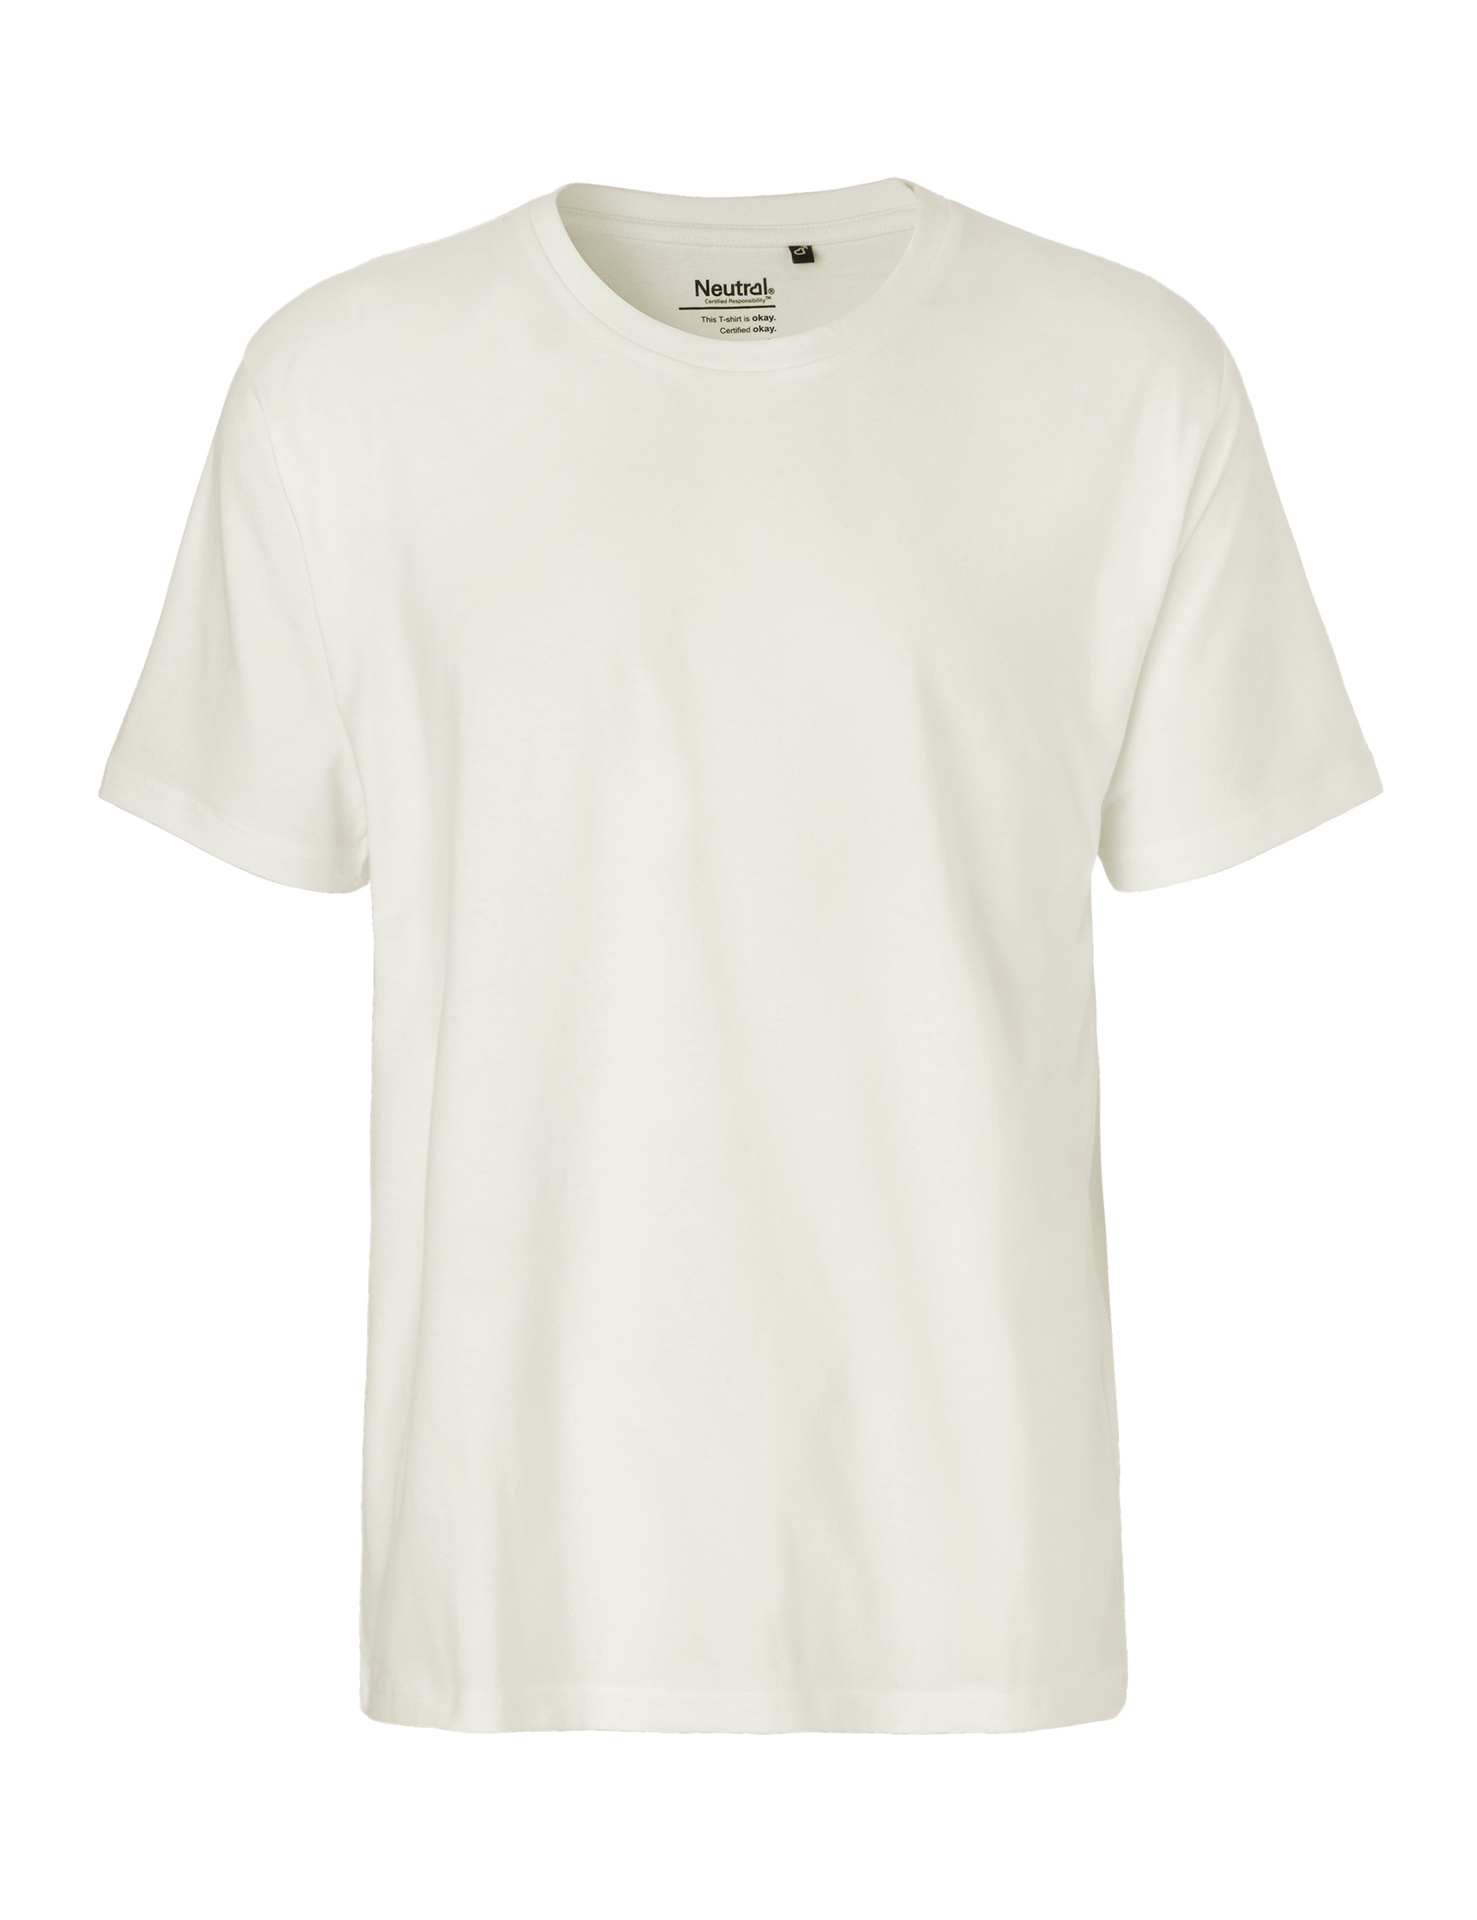 [PR/01217] Mens Classic T-Shirt (Nature 00, 3XL)